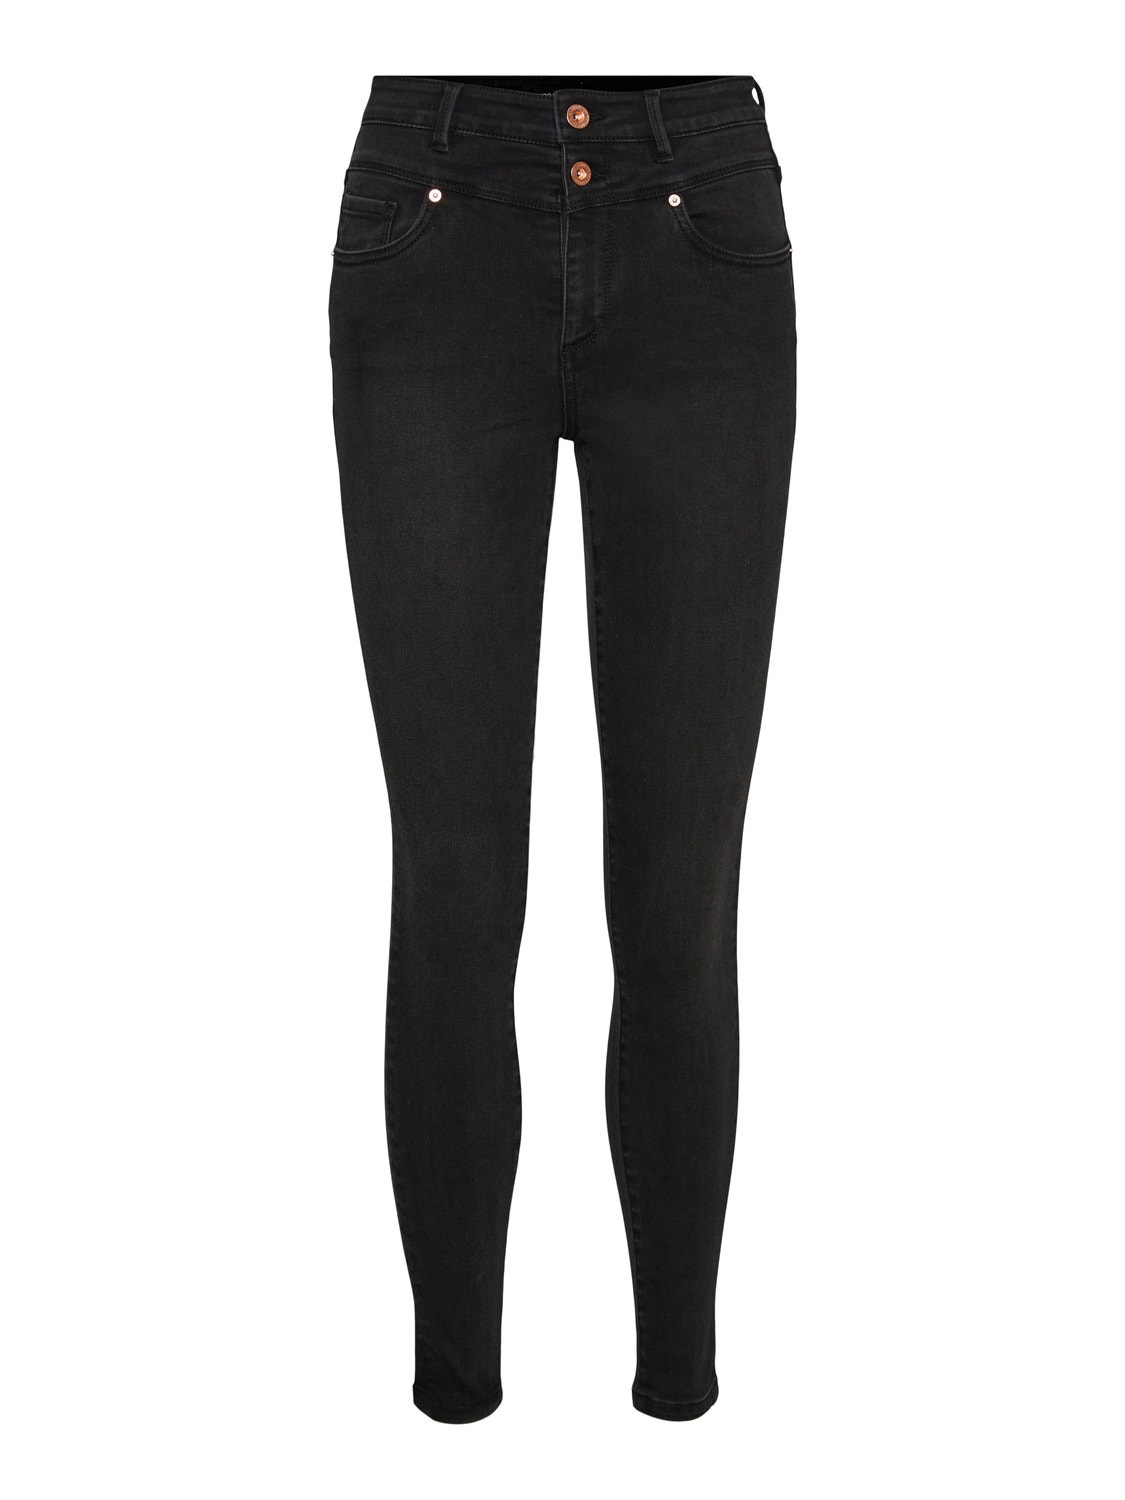 Vero Moda VMSOPHIA Wysoki stan Krój skinny Jeans -Black Denim - 10265007